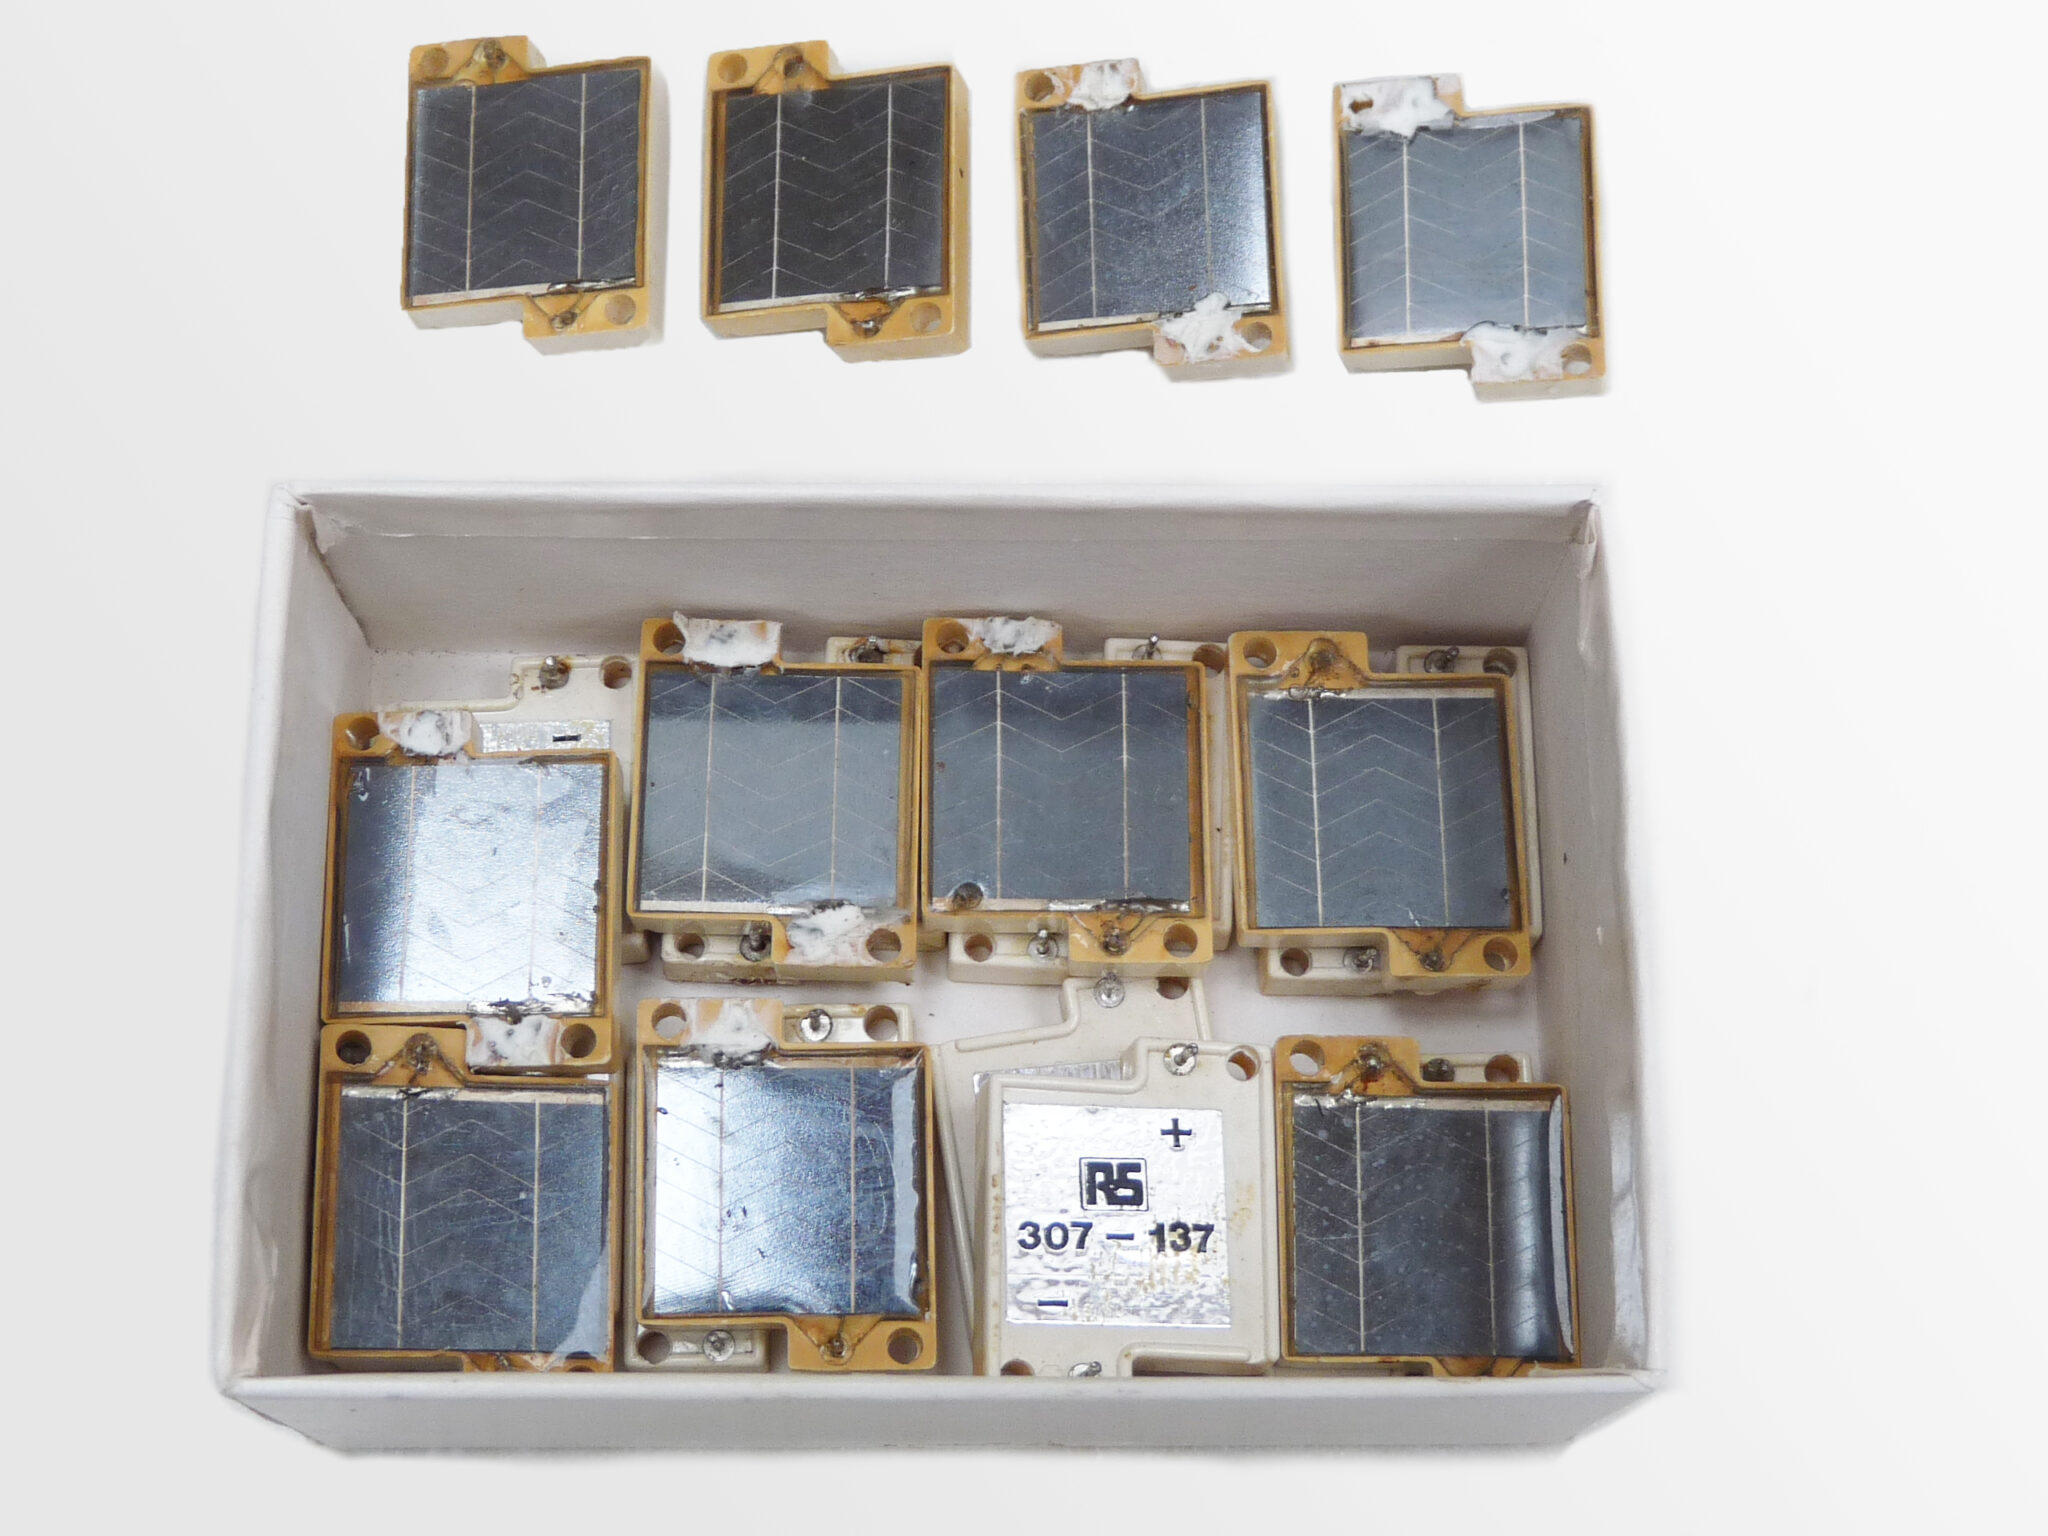 Solar Walkman Cassette Player • Museum Of Solar Energy